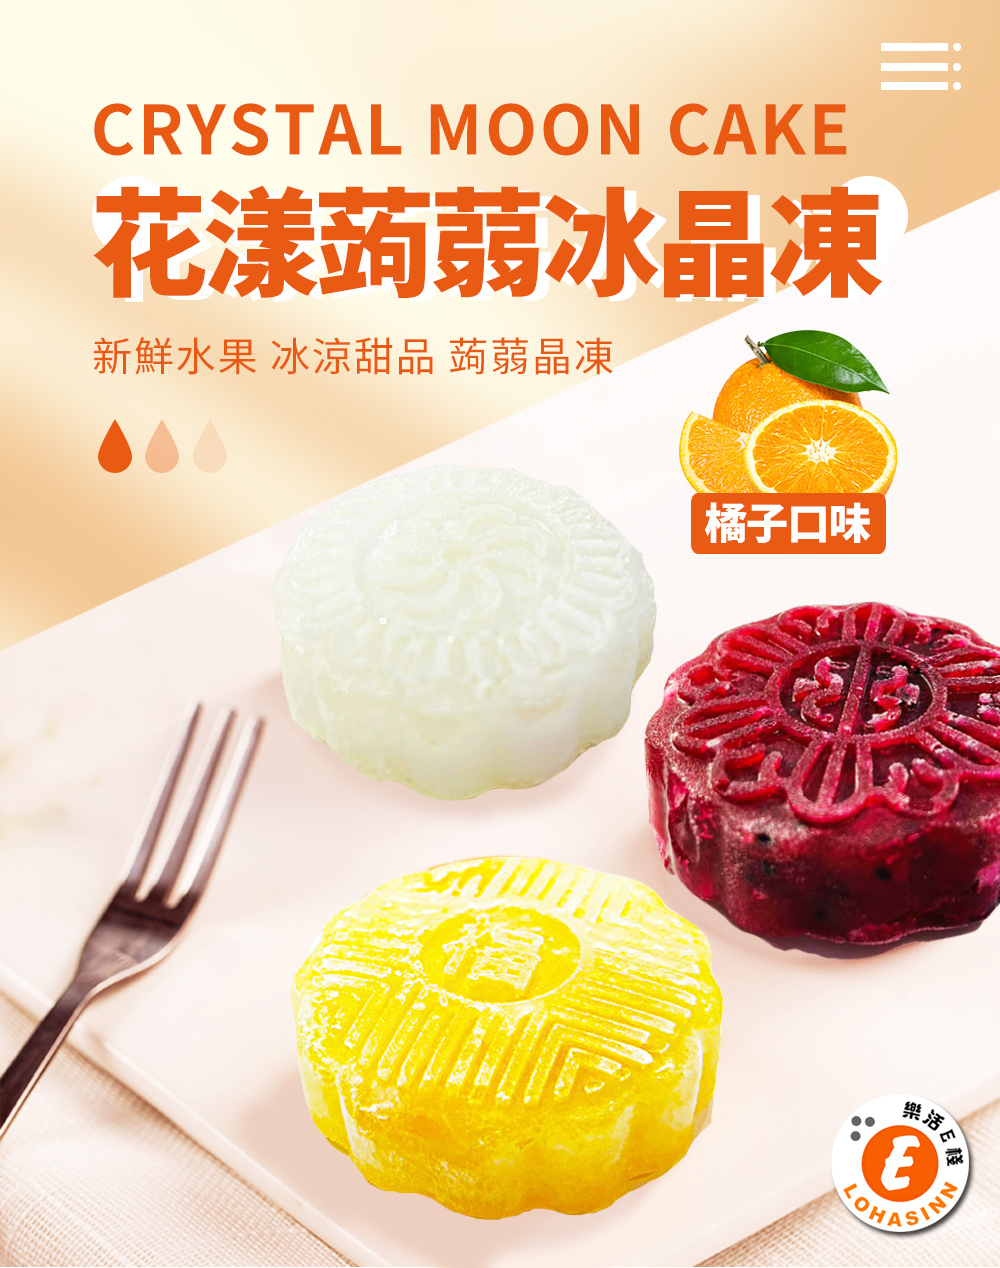 樂活e棧 花漾蒟蒻冰晶月餅-橘子口味12顆x1盒(全素 甜點